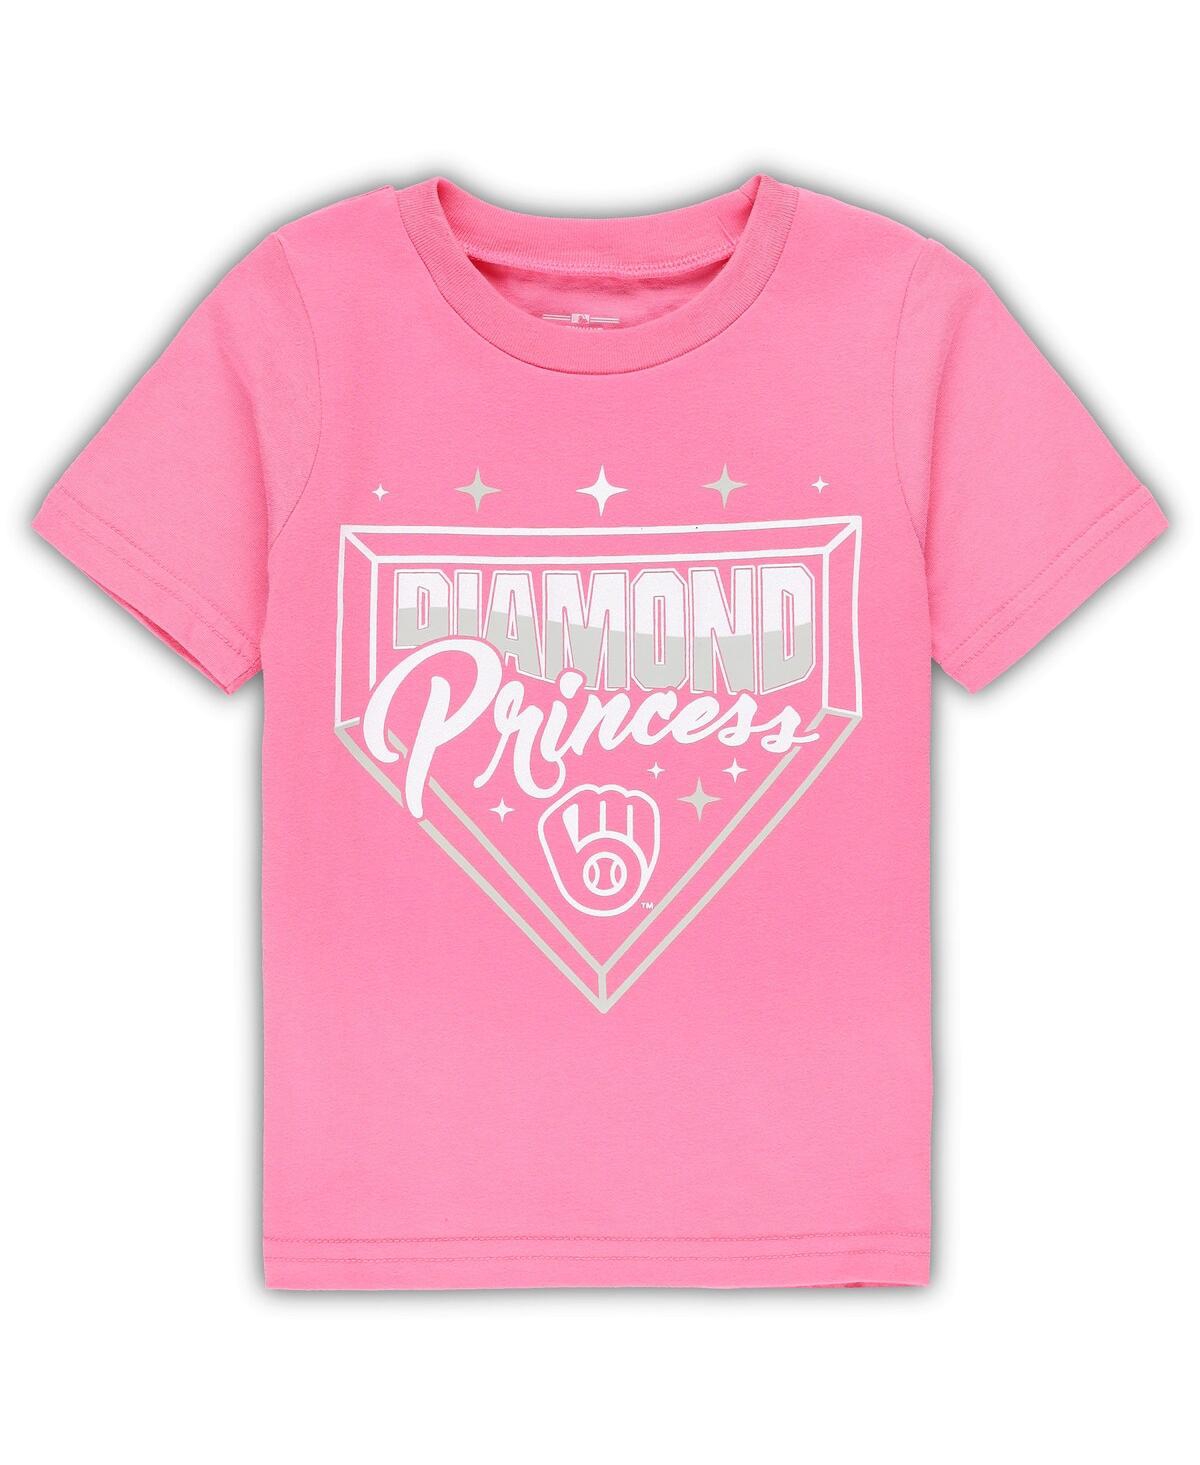 Shop Outerstuff Toddler Girls Pink Milwaukee Brewers Diamond Princess T-shirt